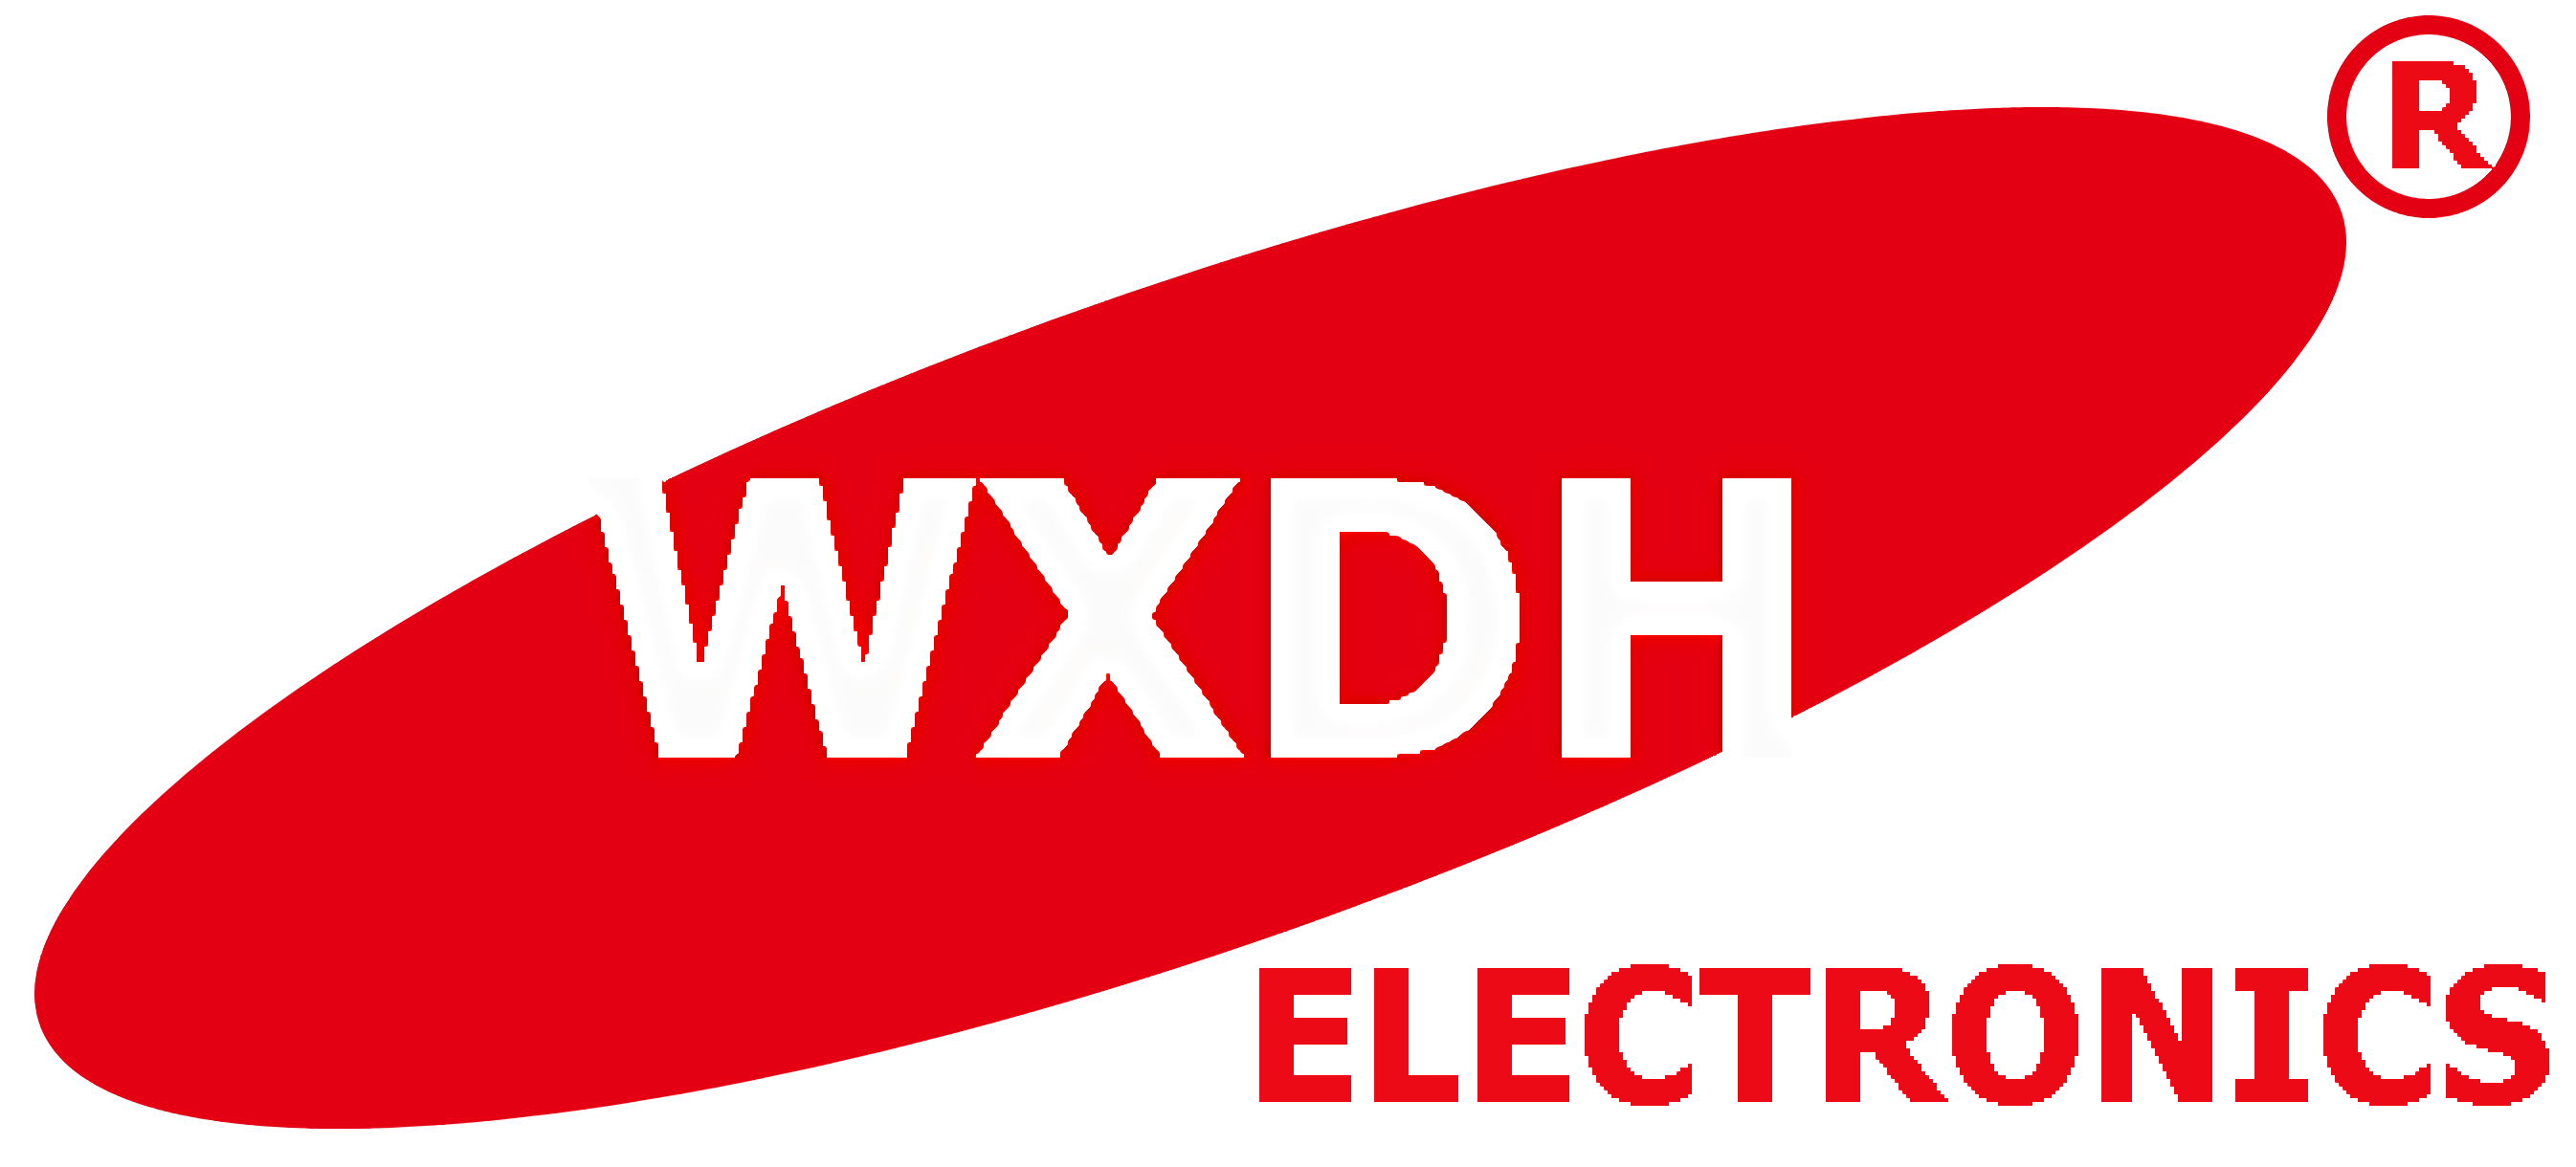 logo wxdh